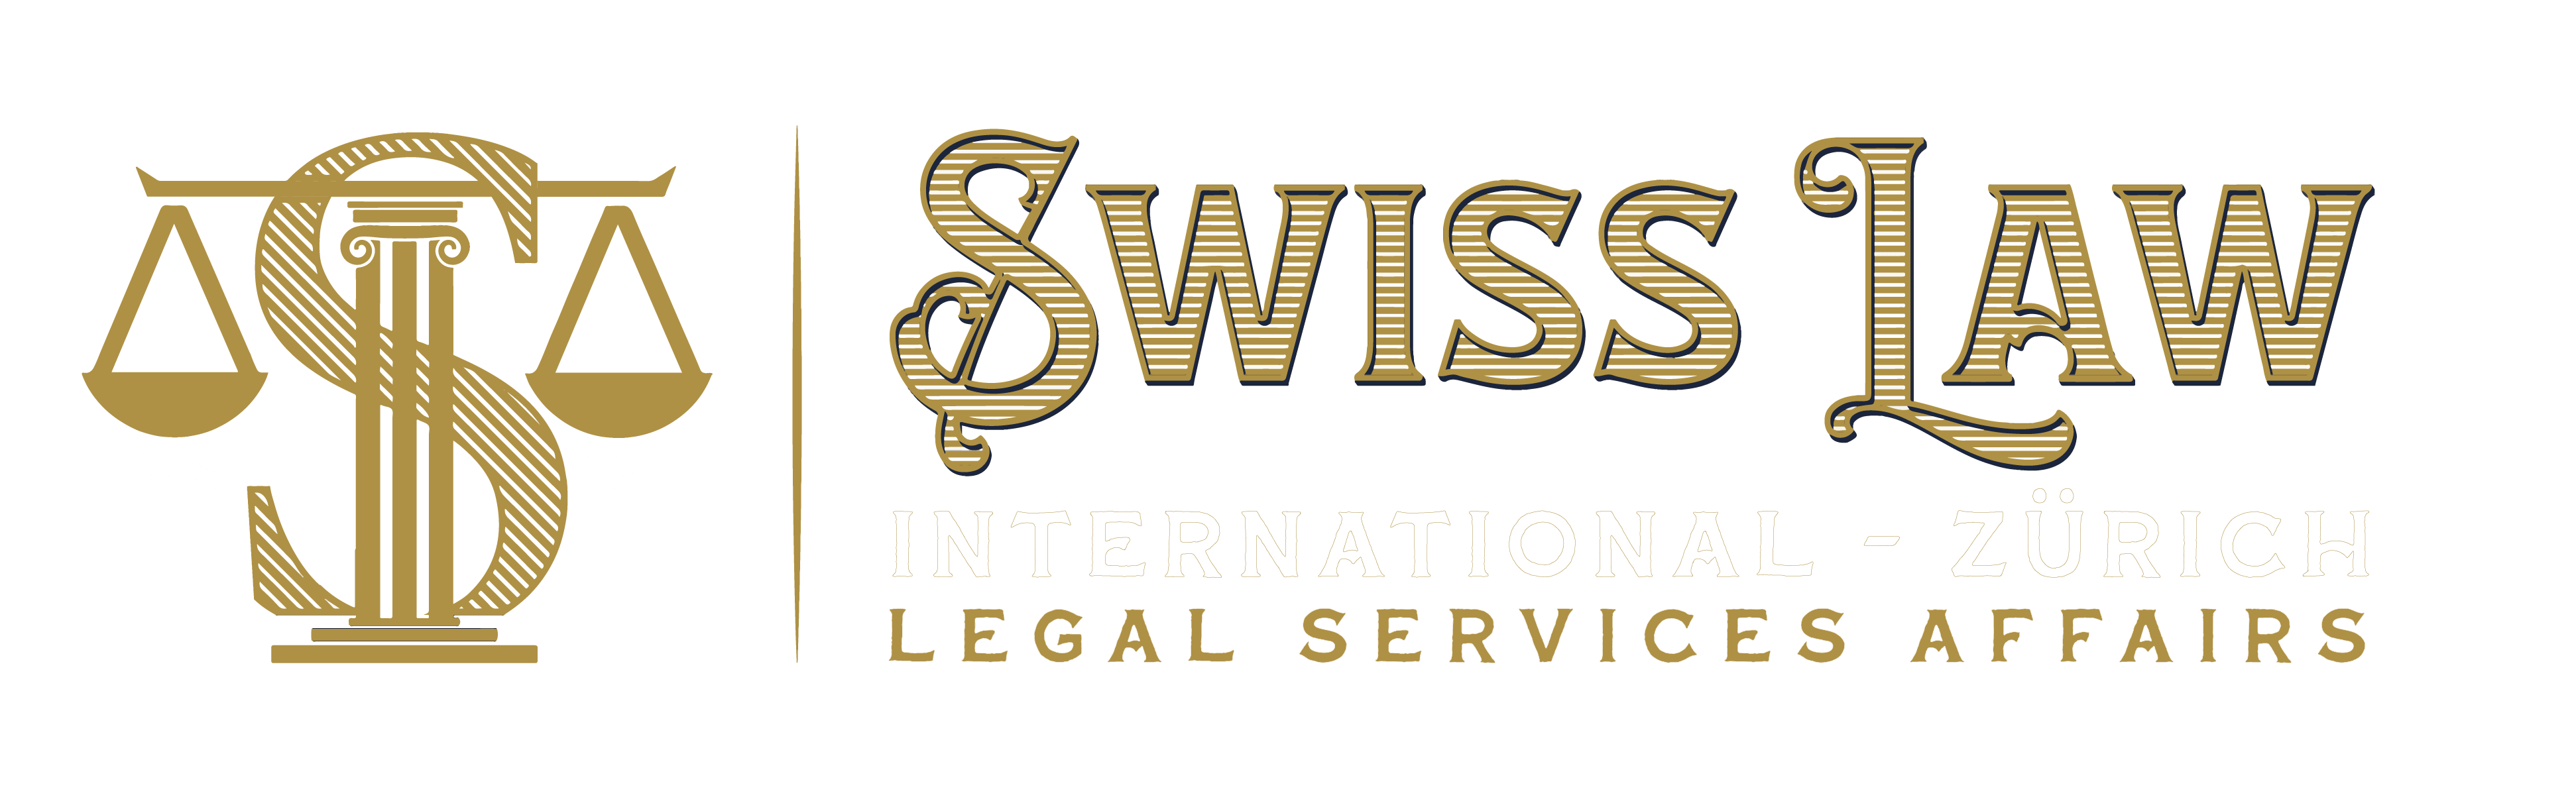 logotipo de novos formatos lei suíça-09